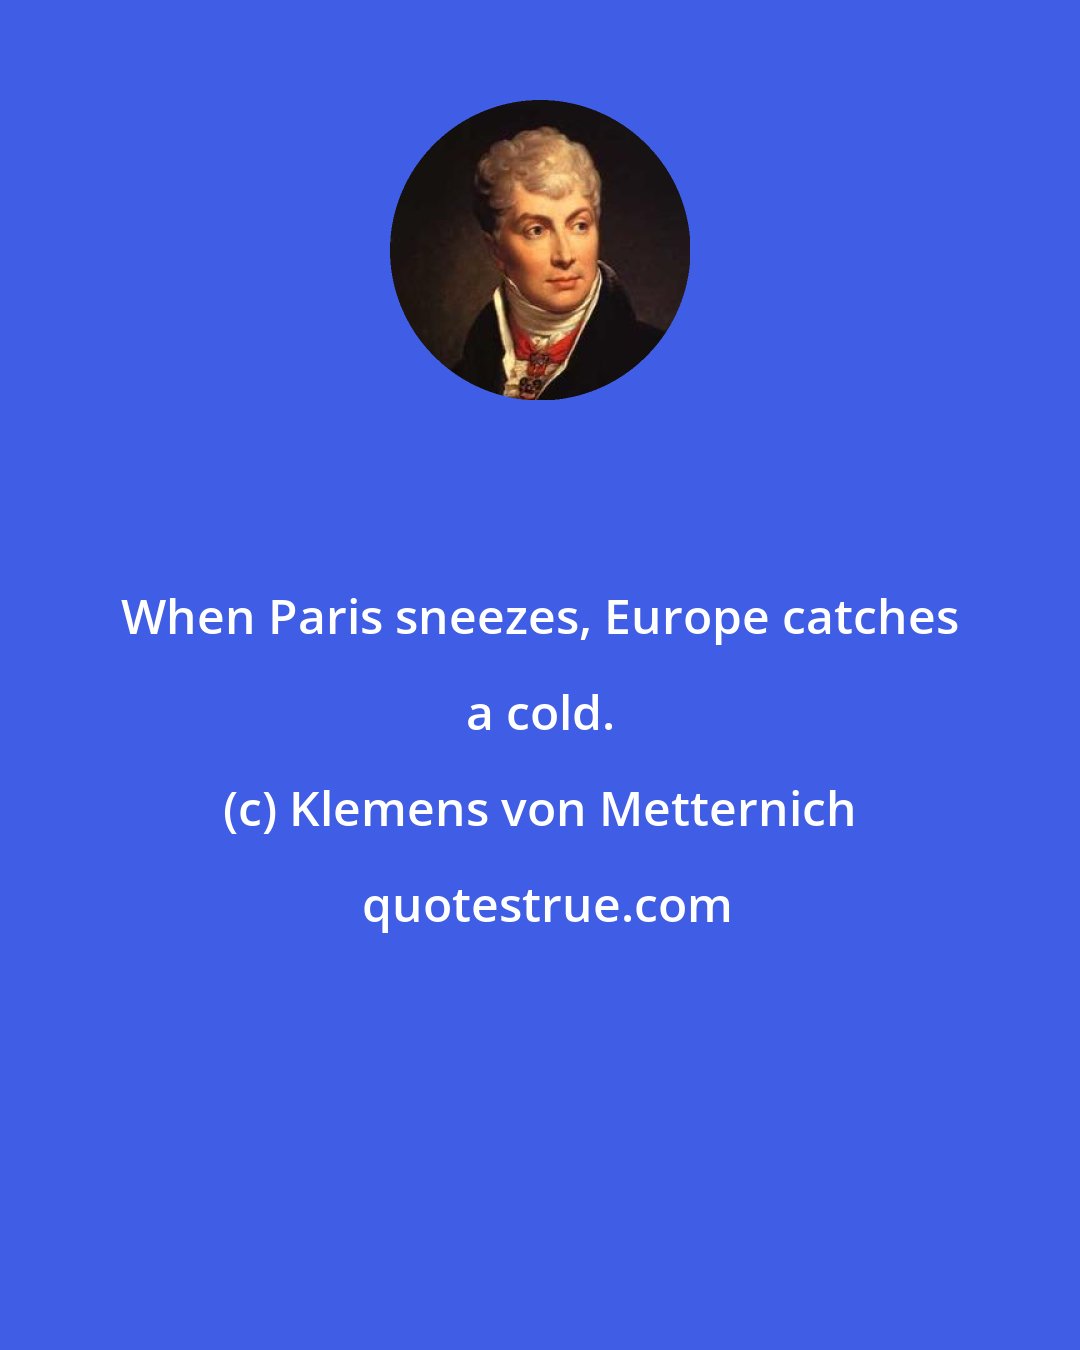 Klemens von Metternich: When Paris sneezes, Europe catches a cold.